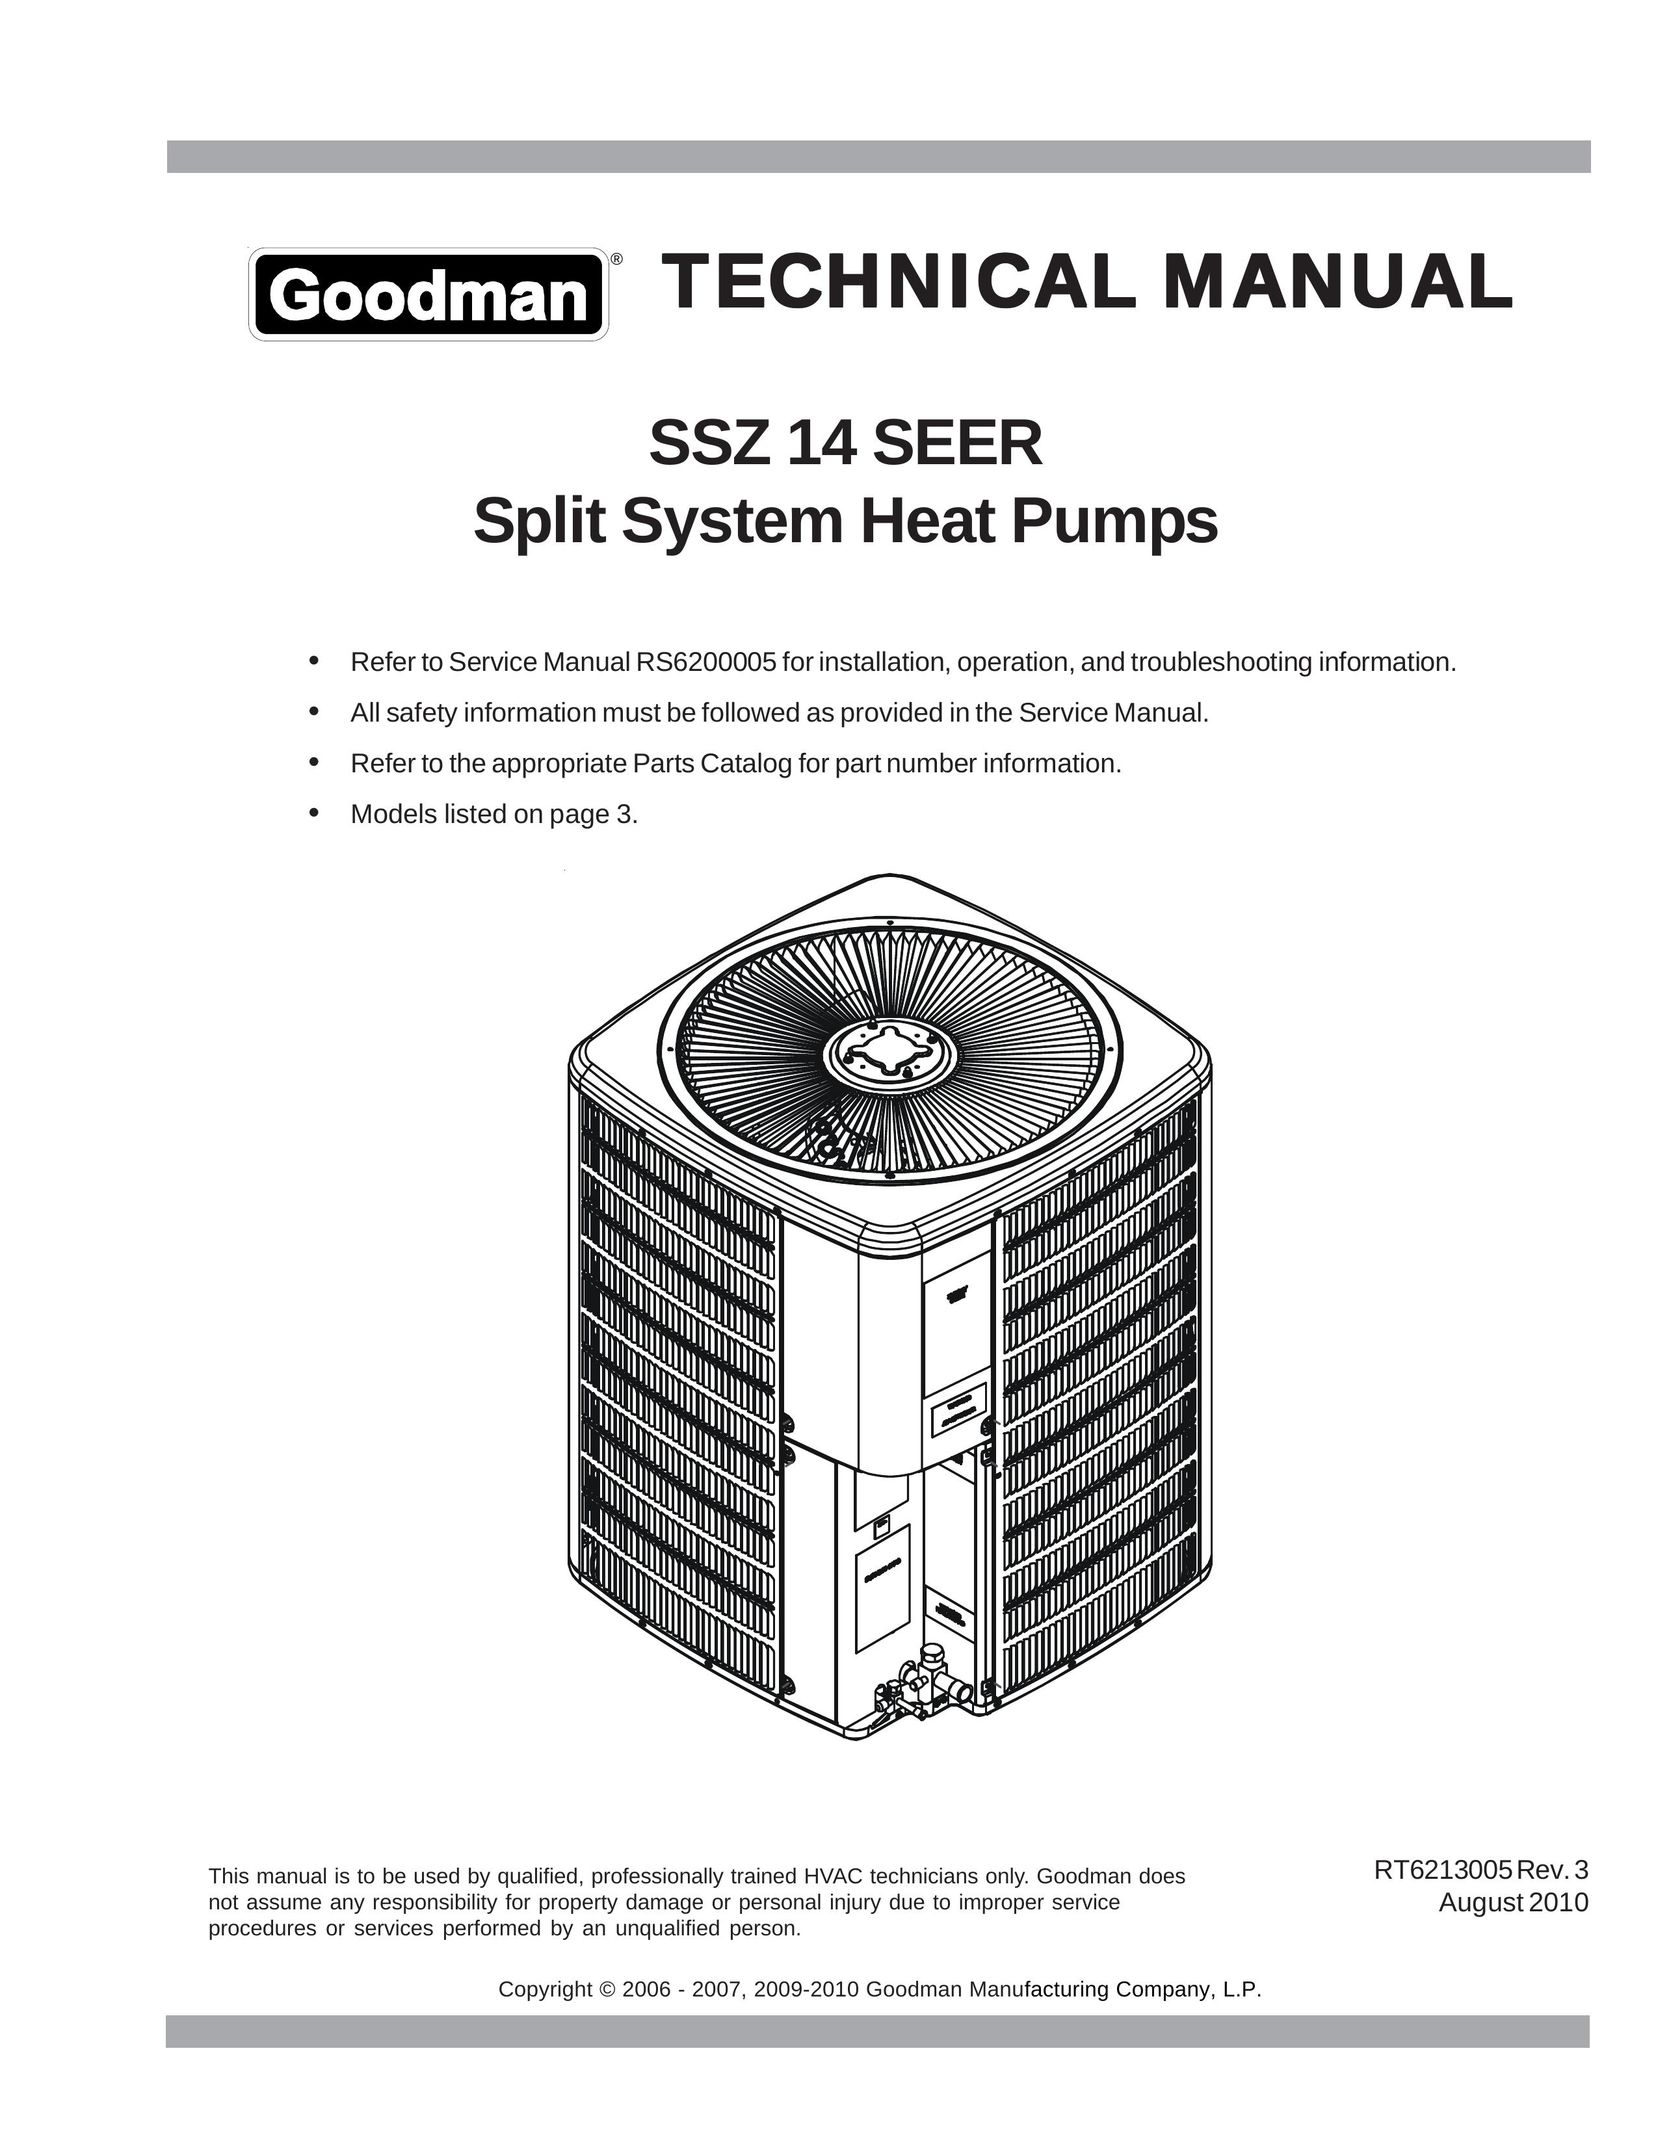 Goodman Mfg SSZ 14 SEER Heat Pump User Manual